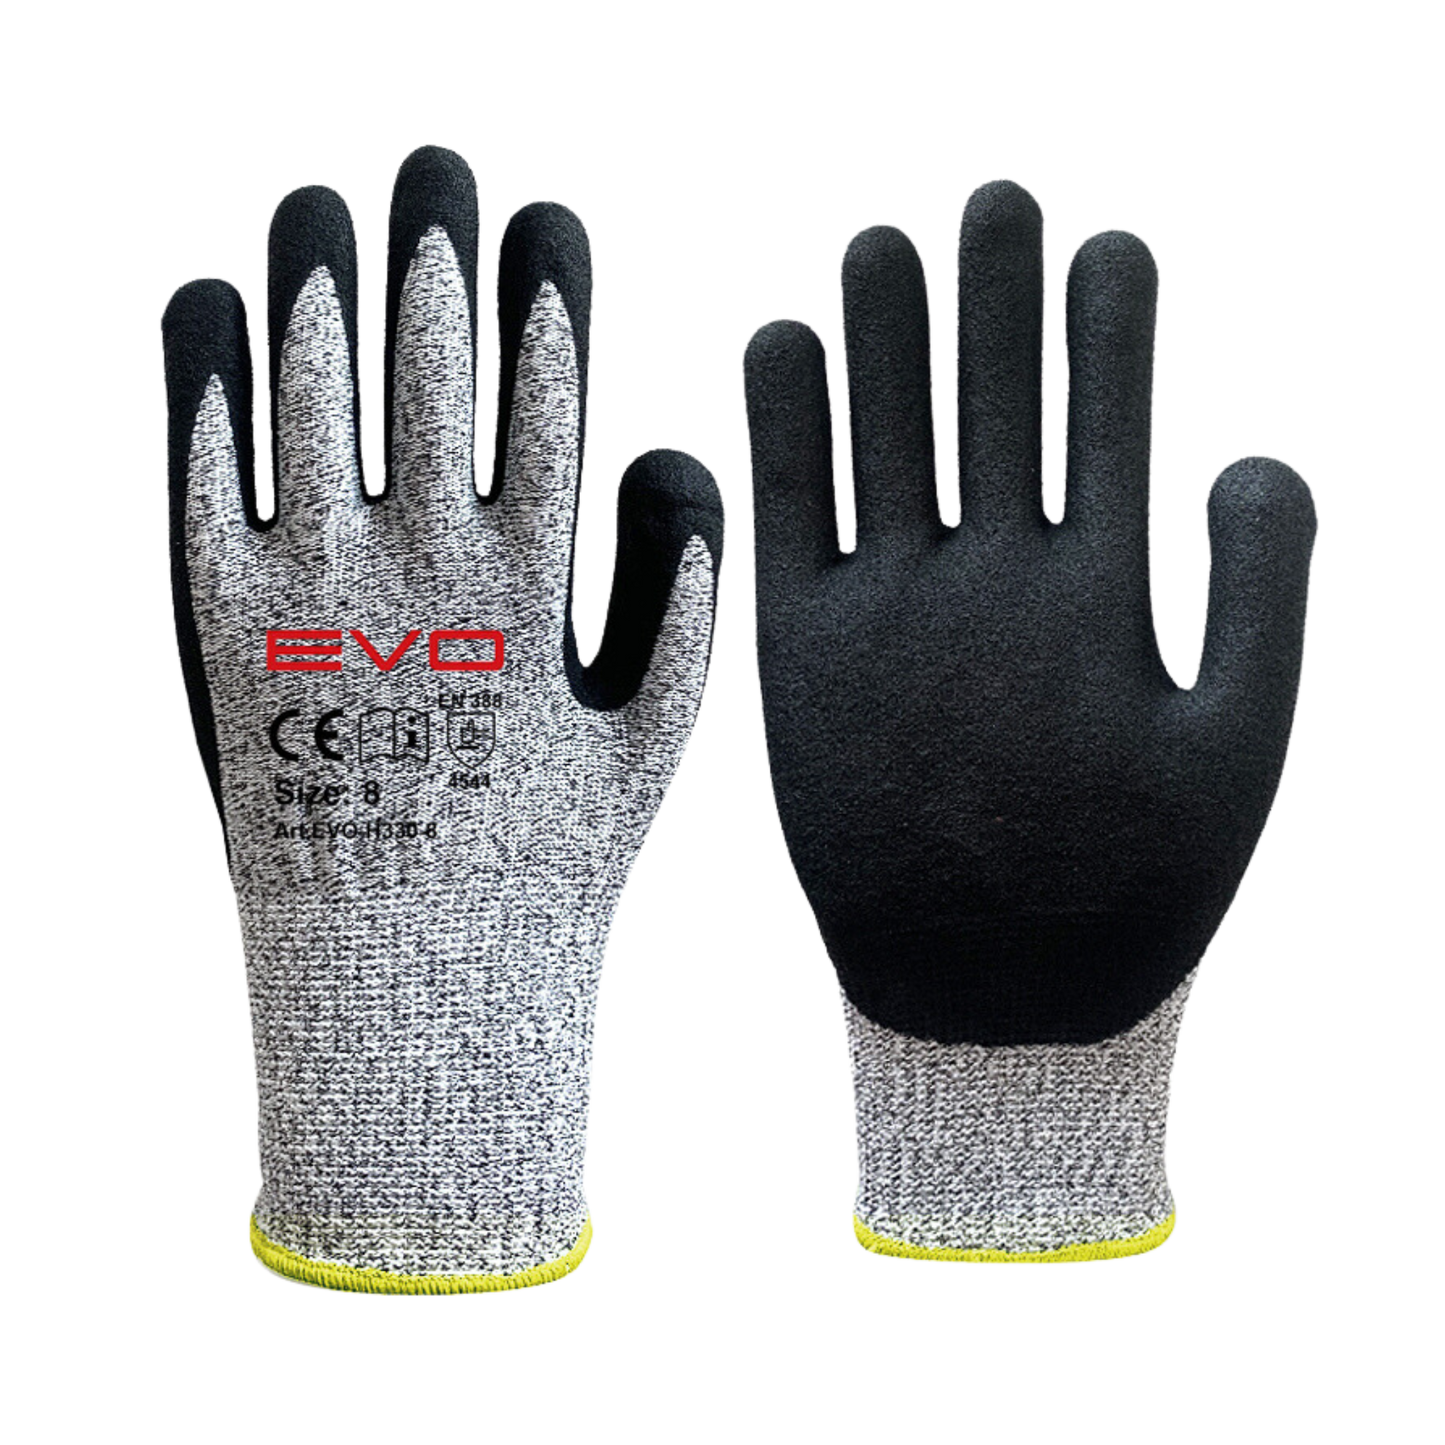 EVO - H330 Cut 5 Glove